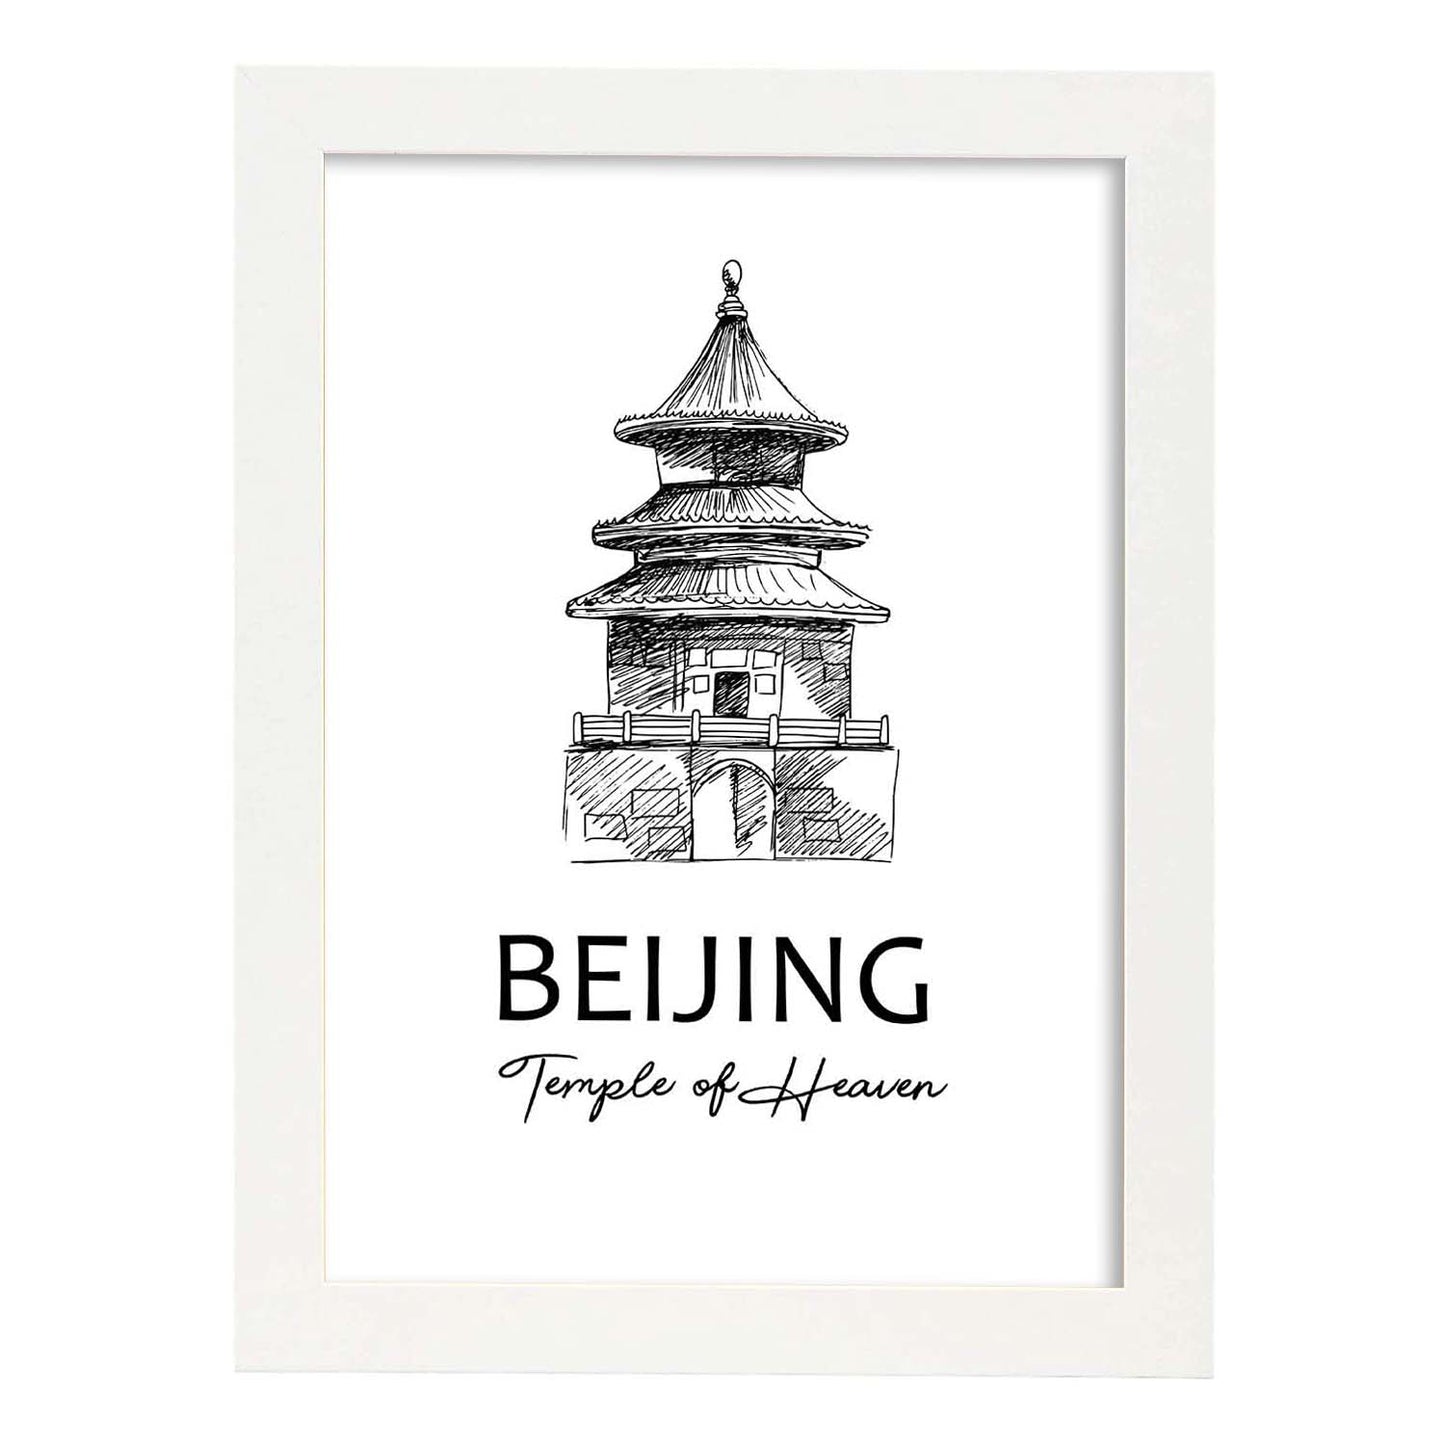 Poster de Beijing - Templo del cielo. Láminas con monumentos de ciudades.-Artwork-Nacnic-A3-Marco Blanco-Nacnic Estudio SL